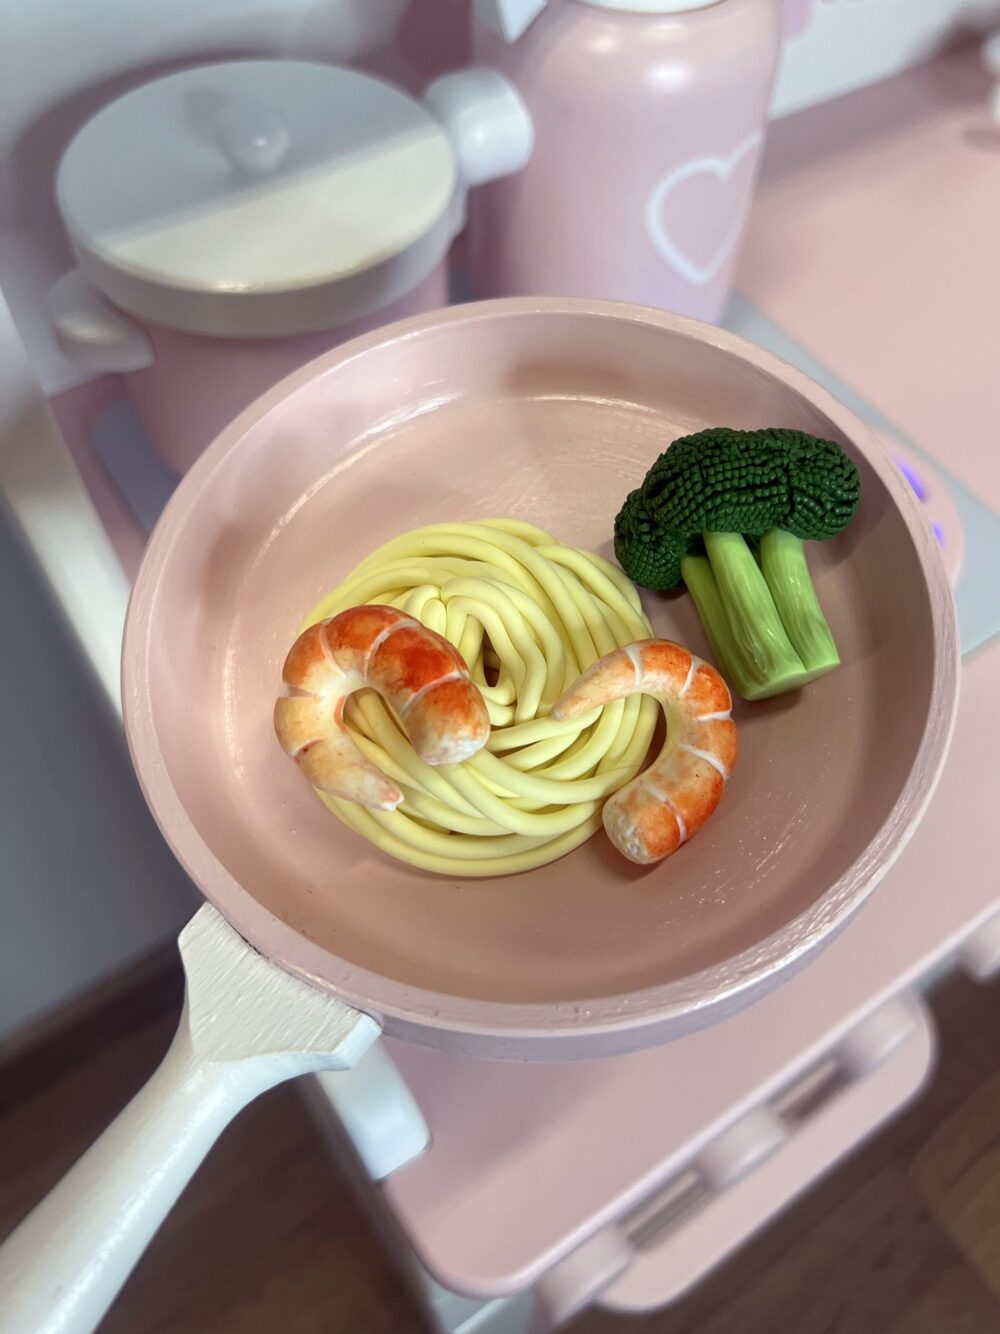 На детской игровой сковороде лежит 2 креветки, спагетти и брокколи